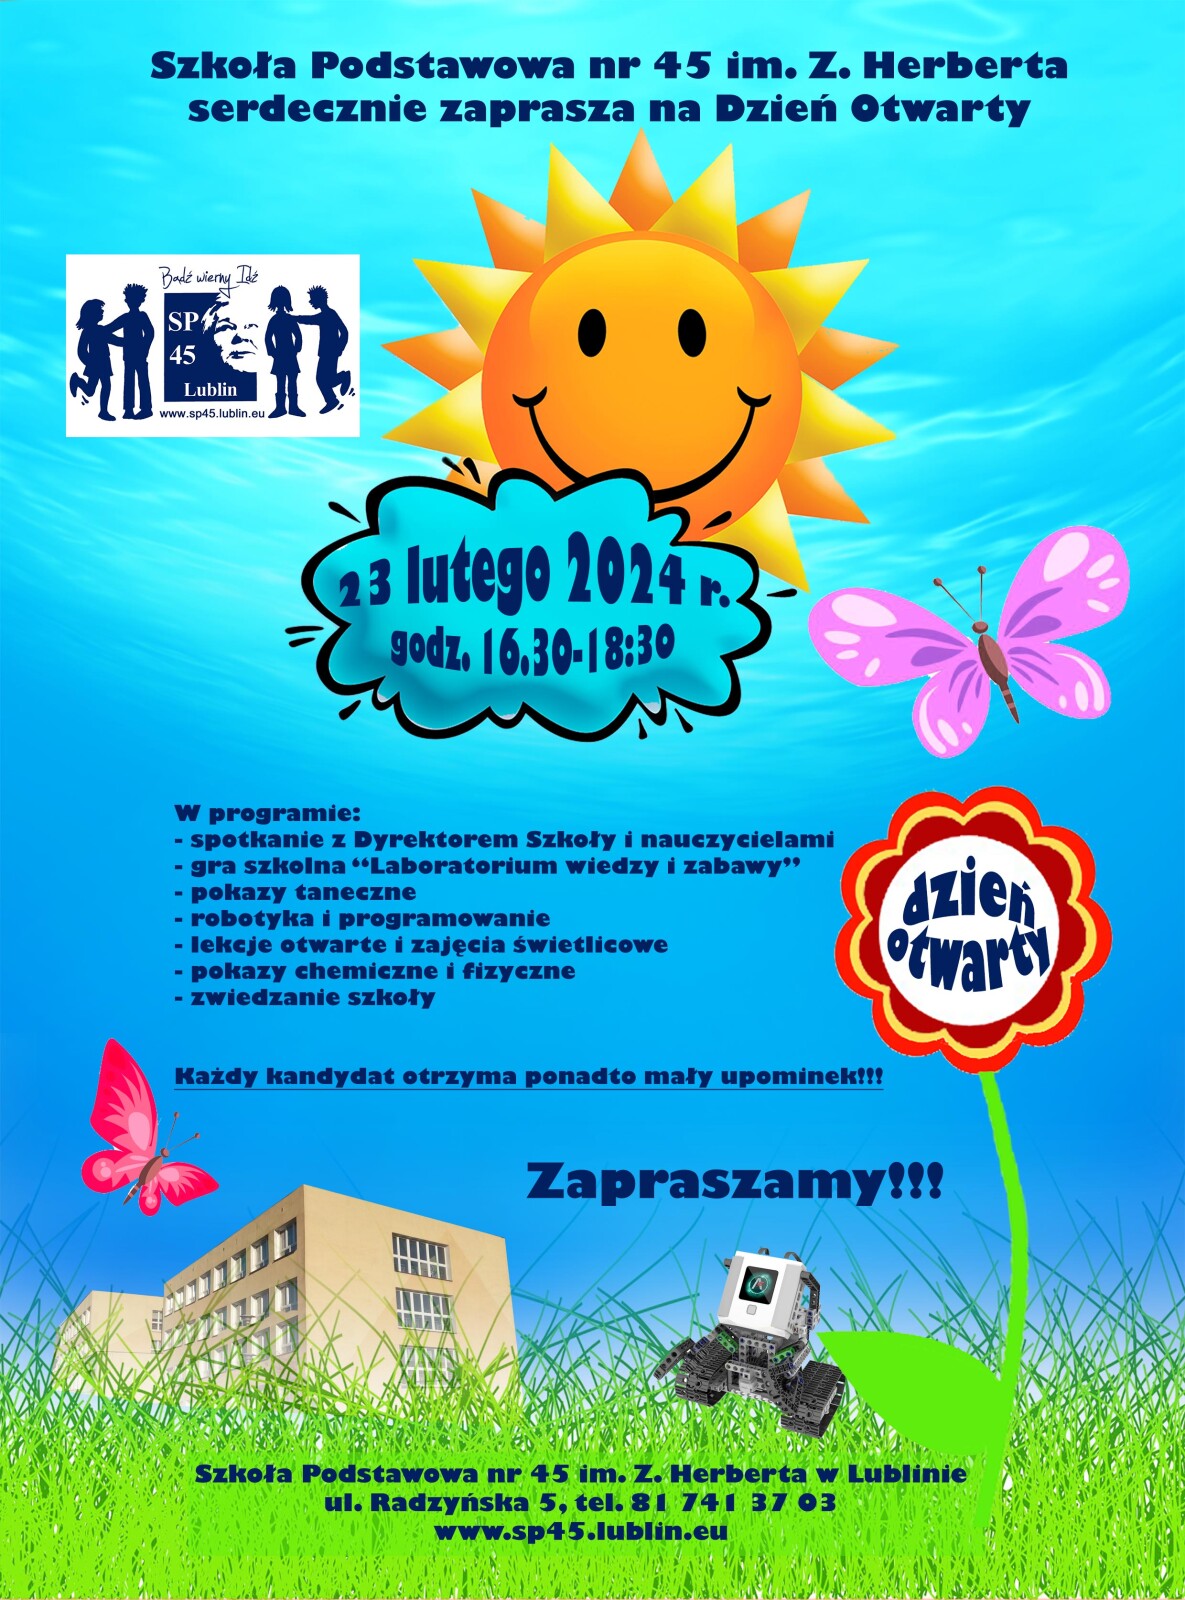 Plakat promujący dzień otwarty szkoły z datą 23 lutego i godzinami 16:30-18:30 oraz programem umieszczonymi na niebieskim tle z uśmiechniętym żółtym słoneczkiem i kwiatkiem oraz motylem.